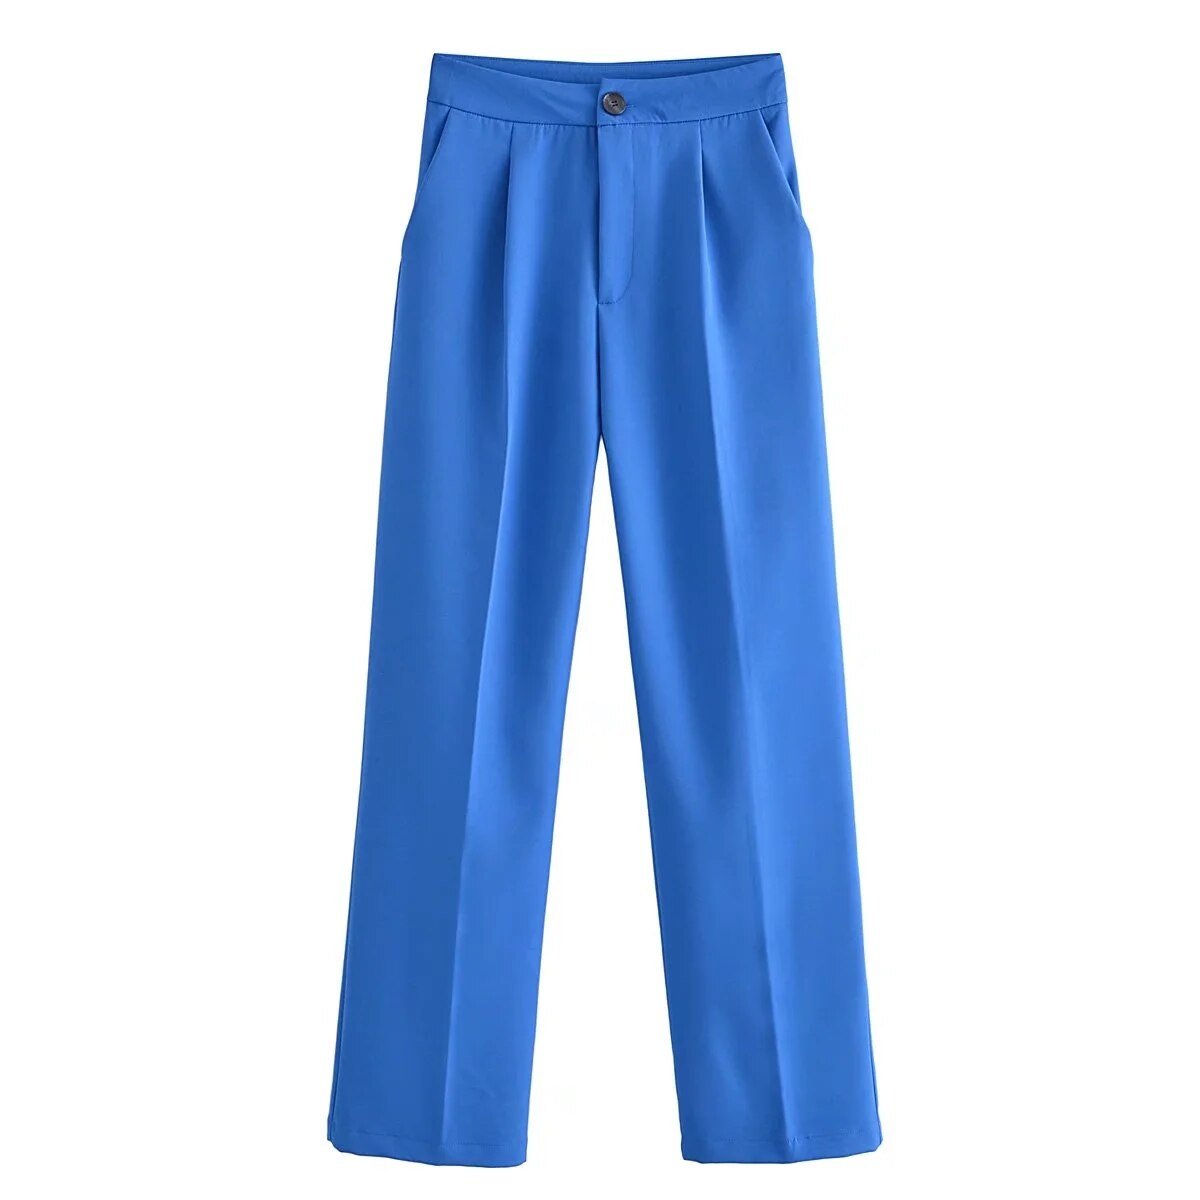 Pantalon stylé à pinces, coupe droite, différentes couleurs-rose-bleu-vert-jaune-orange